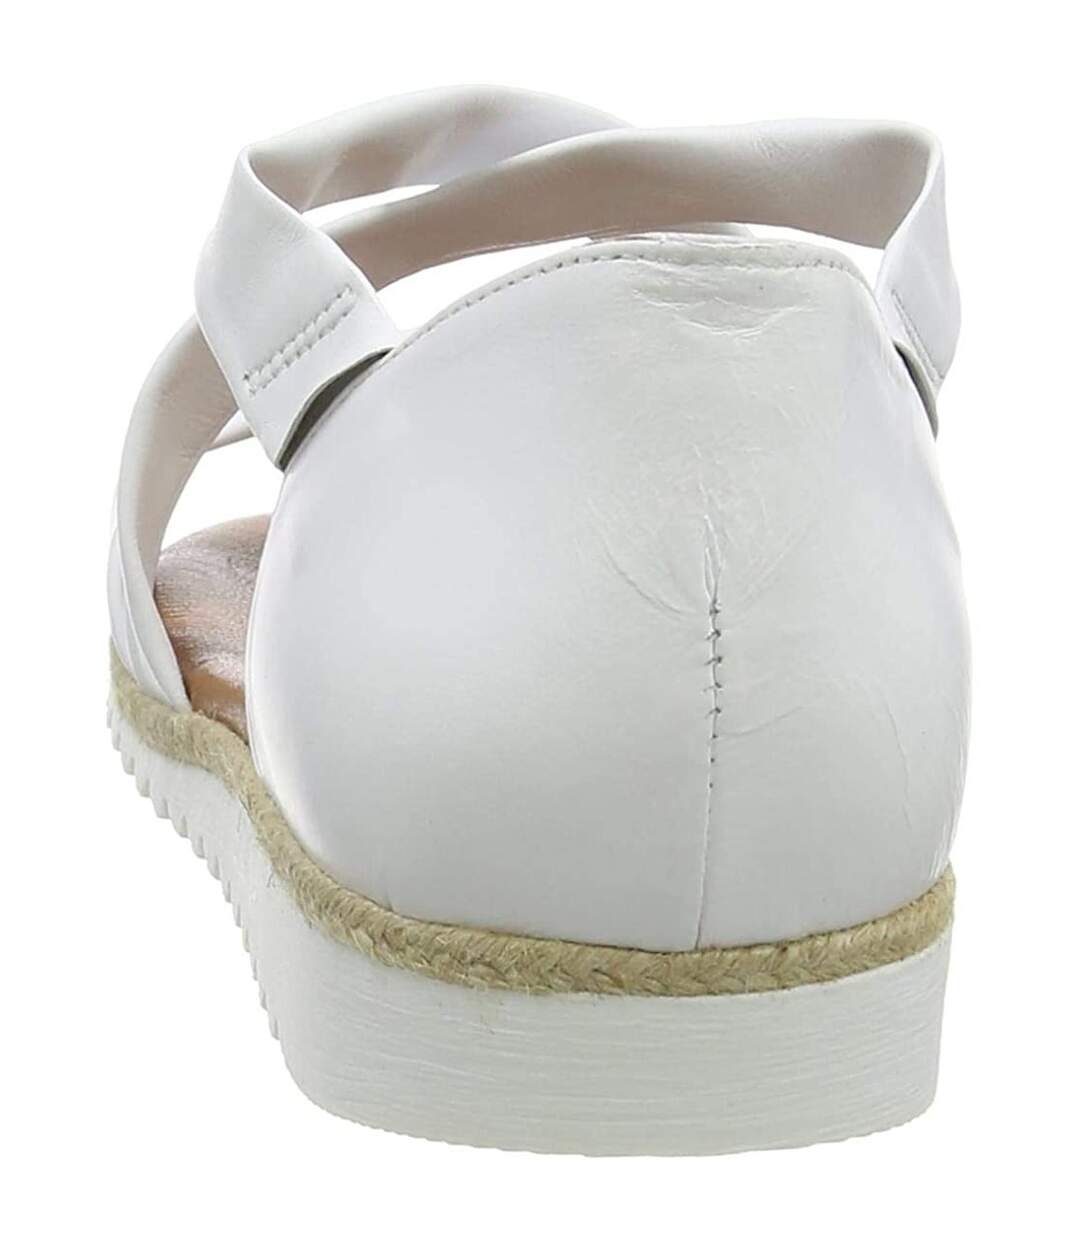 Hush Puppies Womens/Ladies Gemma Espadrille Leather Wedge Sandals (White) - UTFS7634